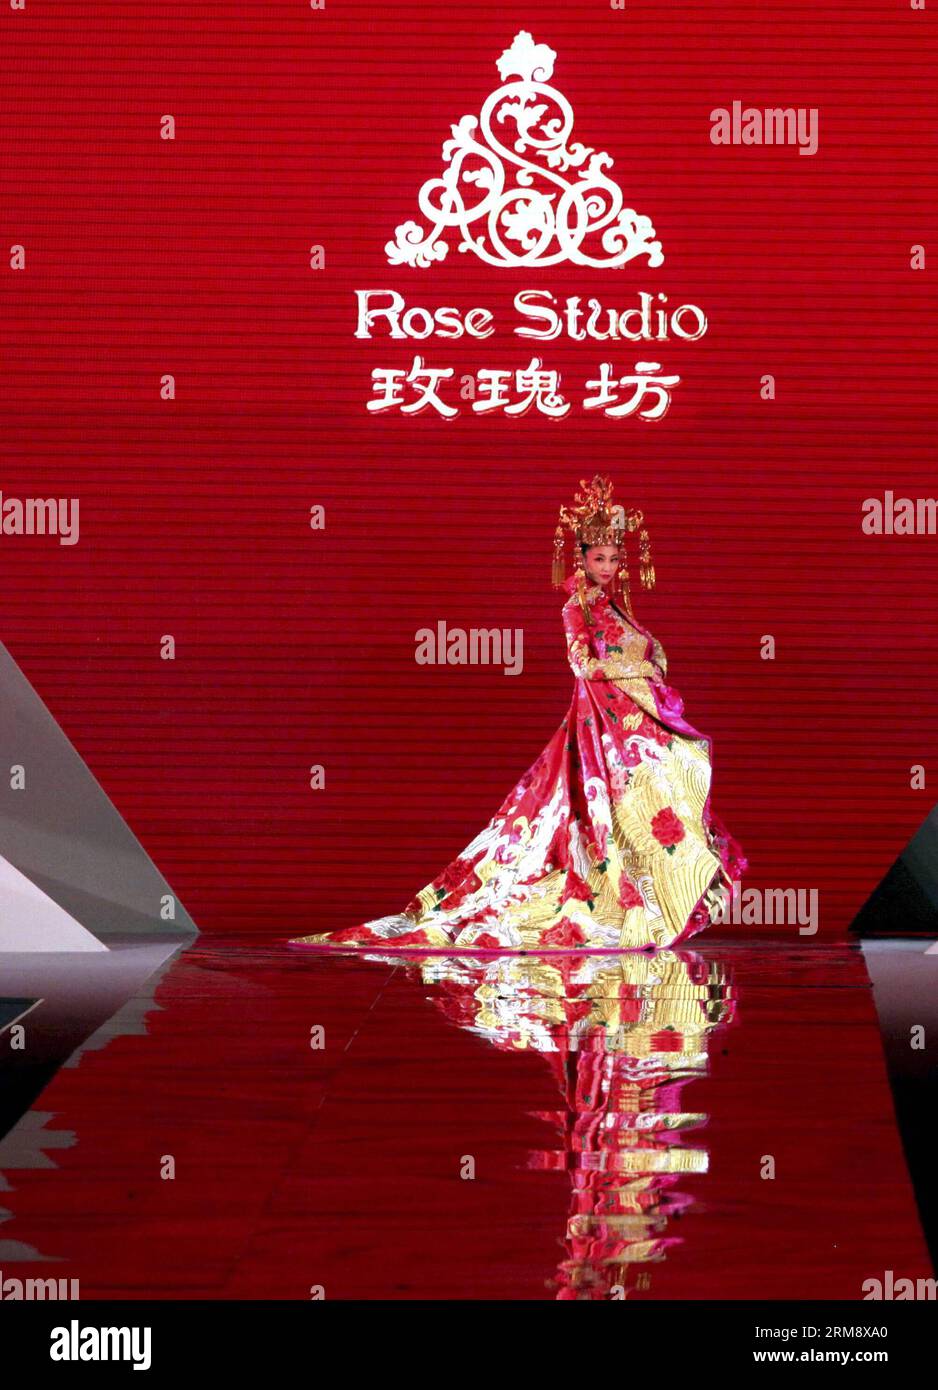 BEIJING, 28 avril 2014 (Xinhua) -- Un mannequin présente une création conçue par Guo Pei, un créateur de mode lauréat des prix de China Fashion Meritorious People, lors de la cérémonie de remise des prix de China Fashion Meritorious People à Shanghai, dans l'est de la Chine, le 28 avril 2014. (Xinhua/Zhuang Yi) (lfj) CHINA-SHANGHAI-FASHION SHOW(CN) PUBLICATIONxNOTxINxCHN Beijing avril 28 2014 XINHUA a Model présente une création conçue par Guo Pei a Fashion Designers remportant les prix des célébrités méritoires de la mode chinoise lors de la cérémonie de remise de prix des célébrités méritoires de la mode chinoise à Shanghai East China en avril Banque D'Images